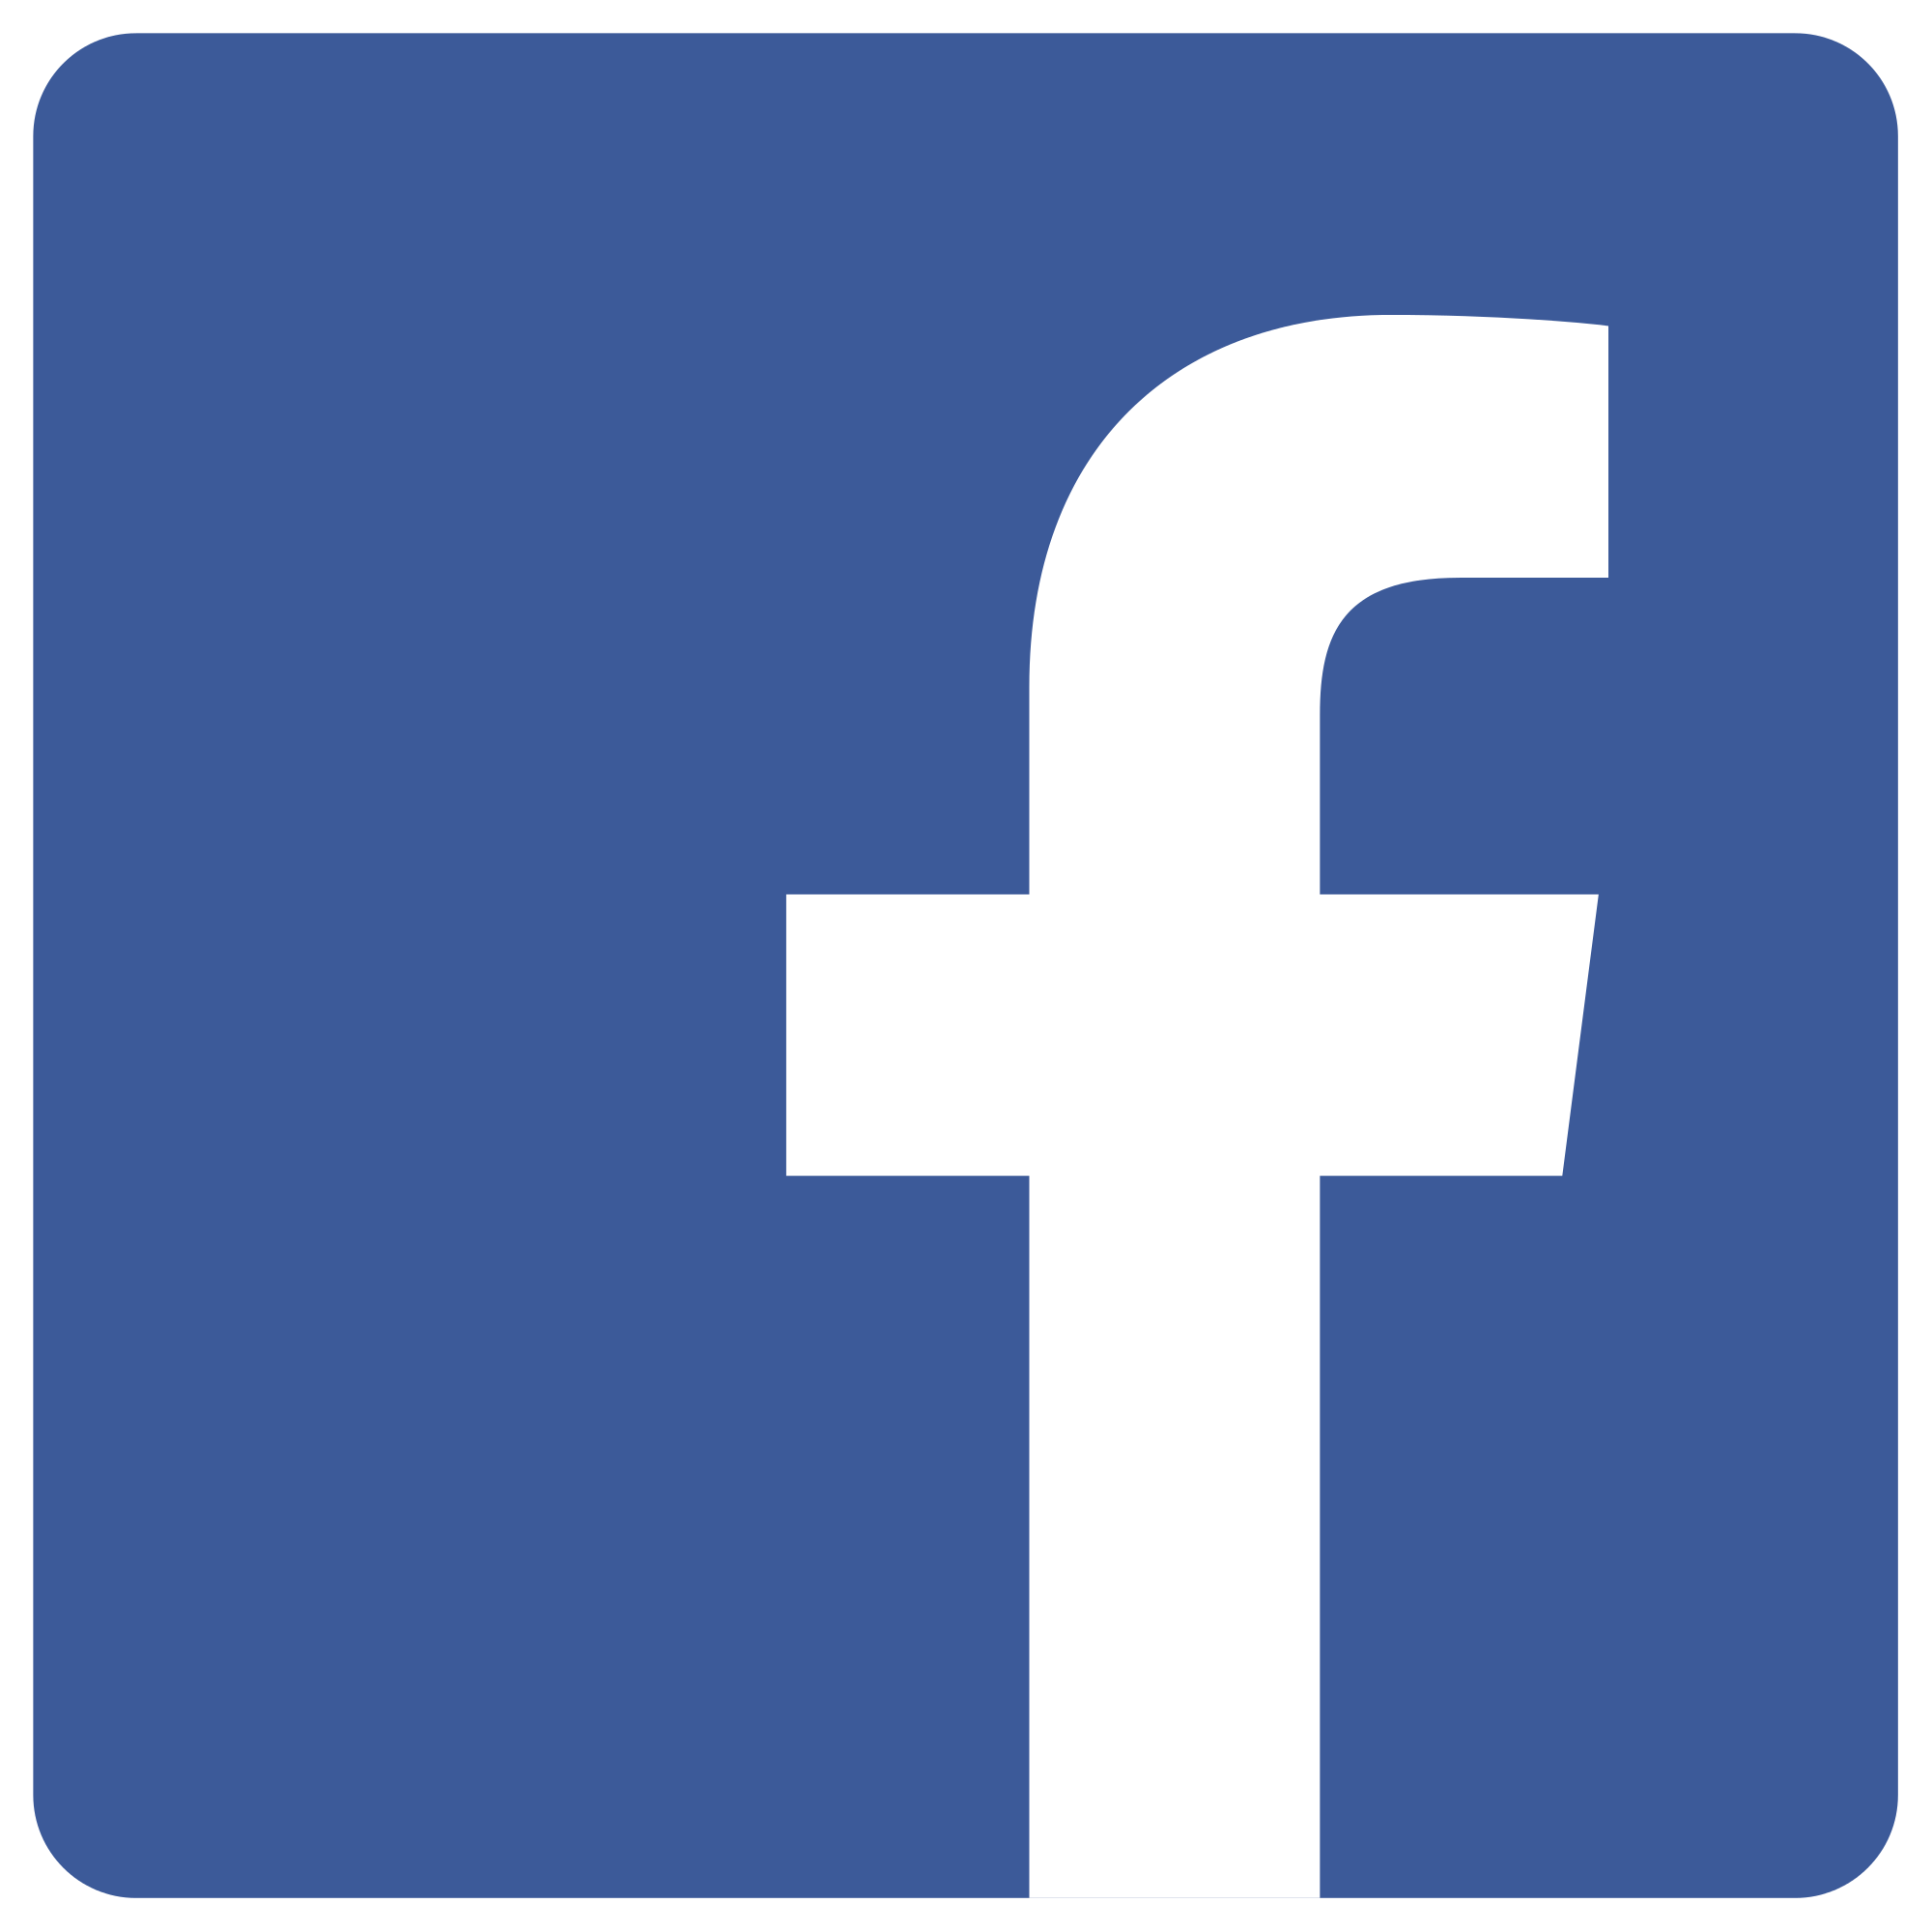 facebook_logos_PNG19748